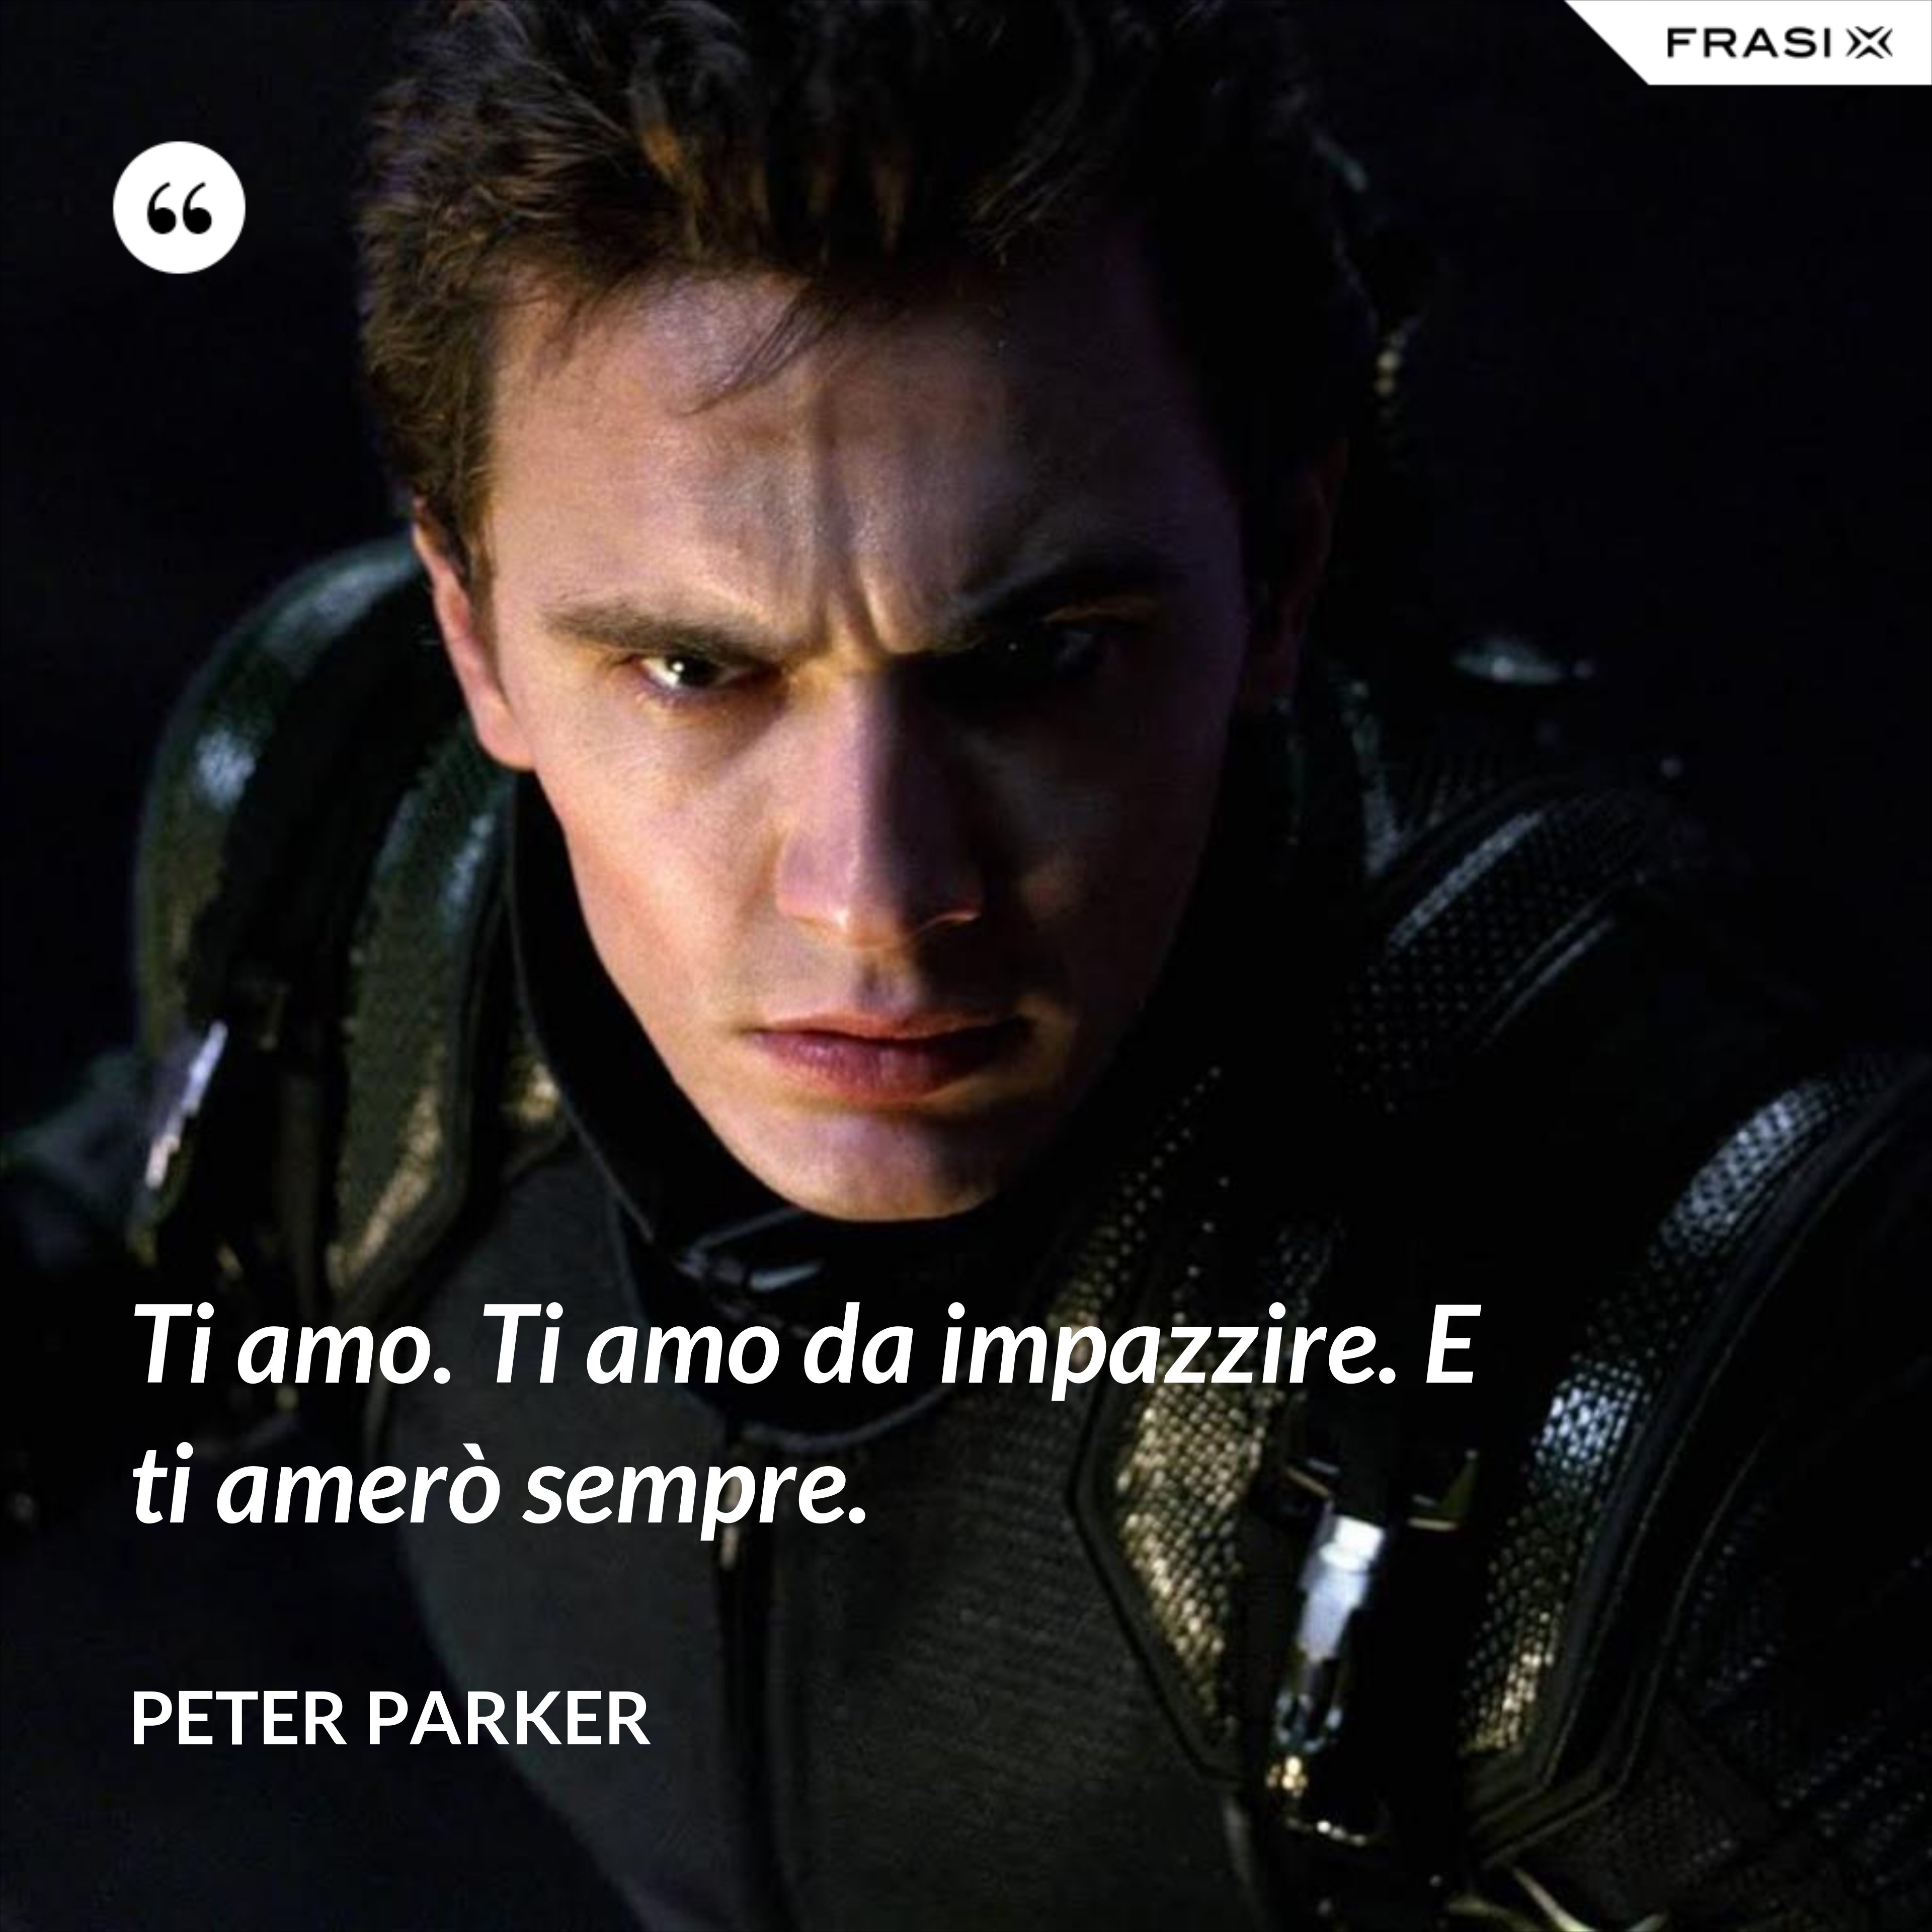 Ti amo. Ti amo da impazzire. E ti amerò sempre. - Peter Parker